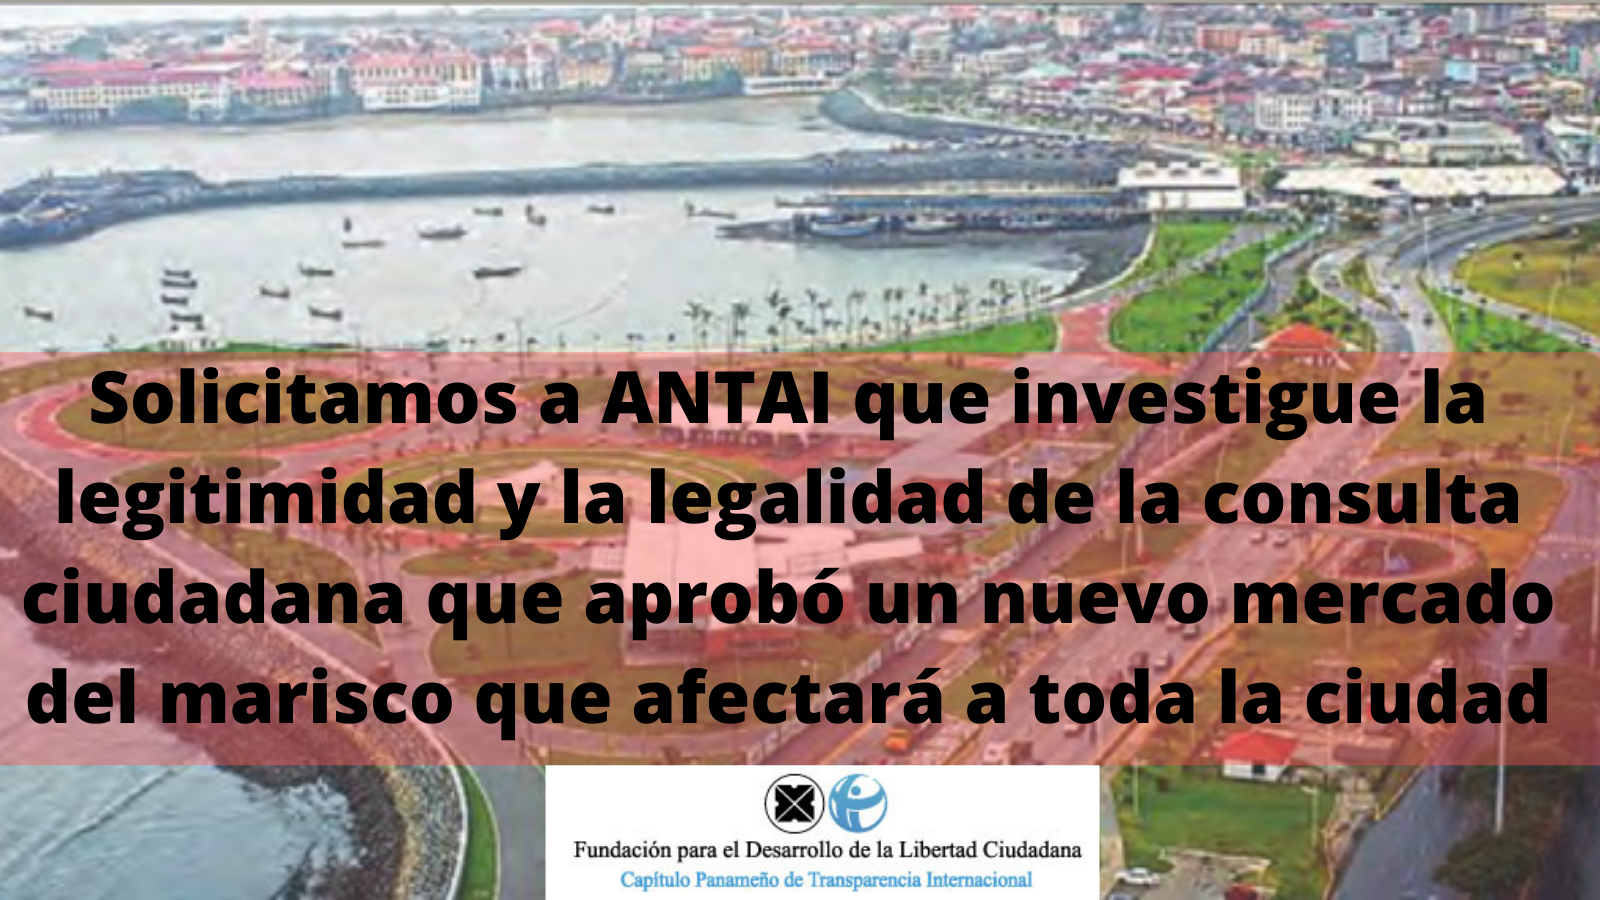 TI-Panamá solicita a ANTAI que investigue la legitimidad y legalidad de la consulta ciudadana que aprobó el nuevo mercado del marisco